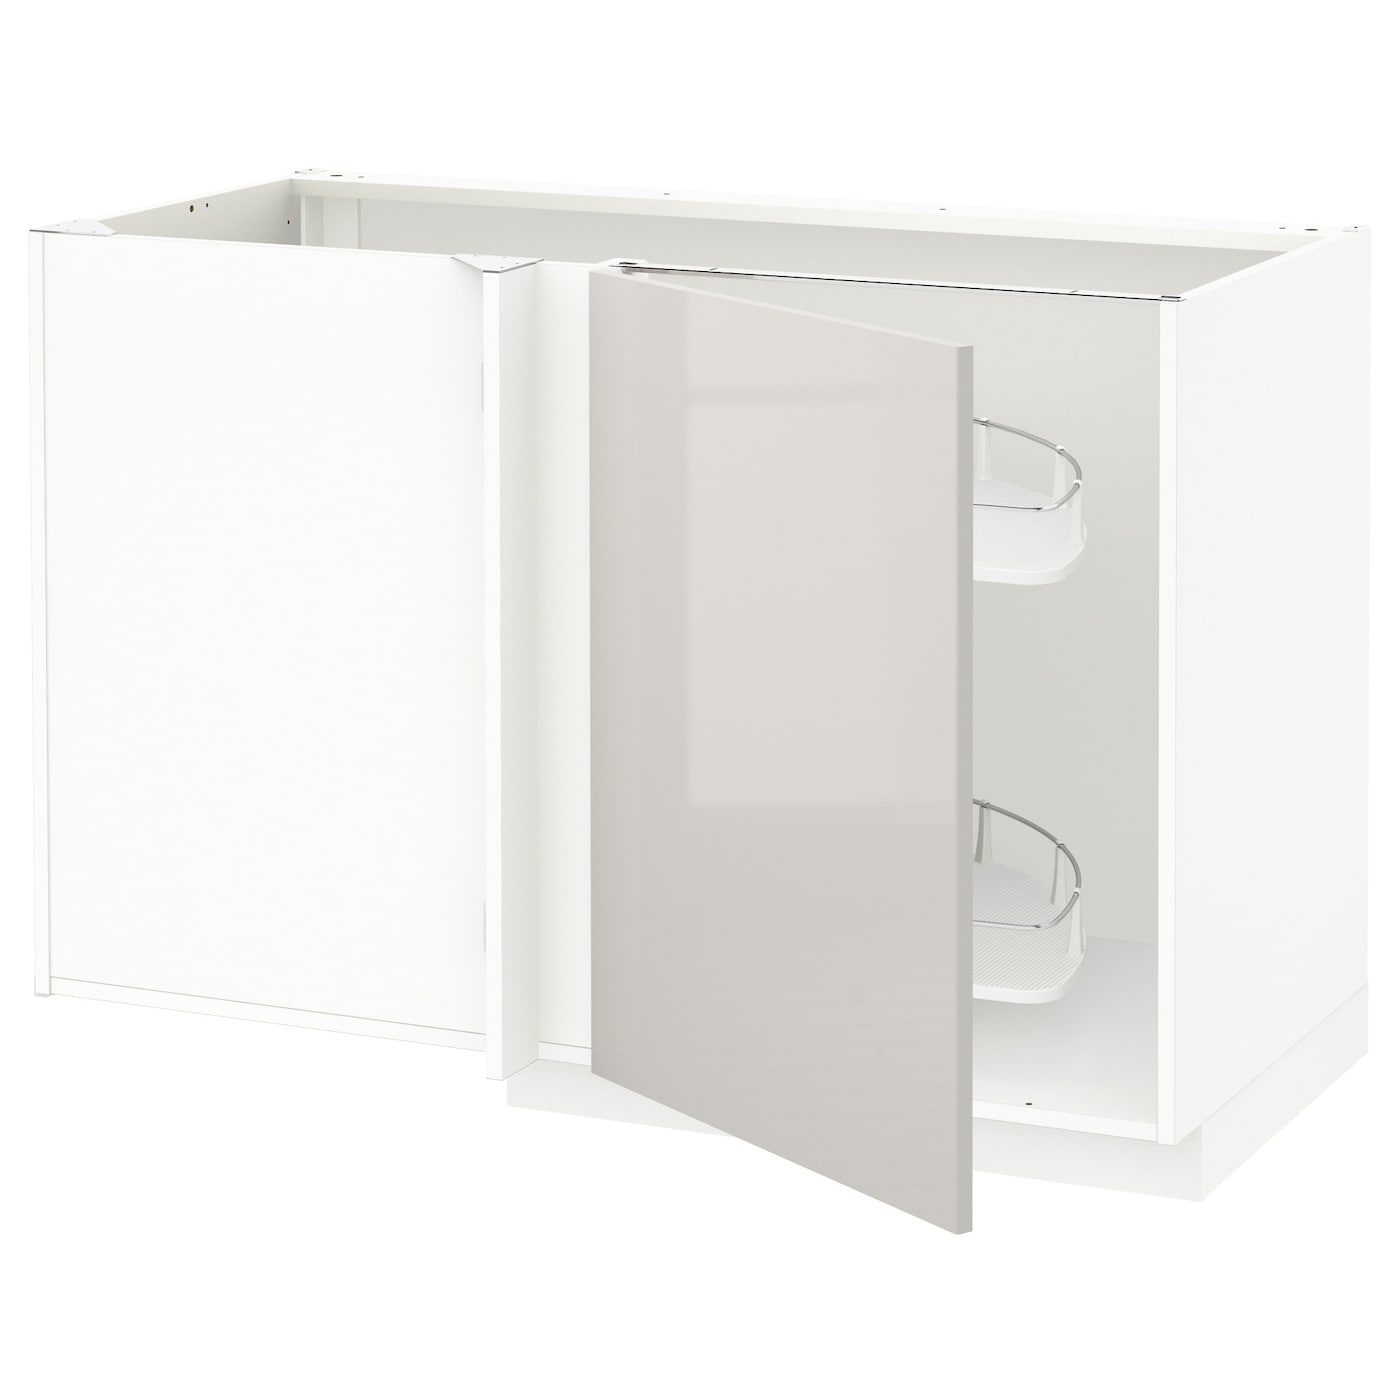 Напольный шкаф  - IKEA METOD, 88x67,5x127,5см, белый/светло-серый, МЕТОД ИКЕА